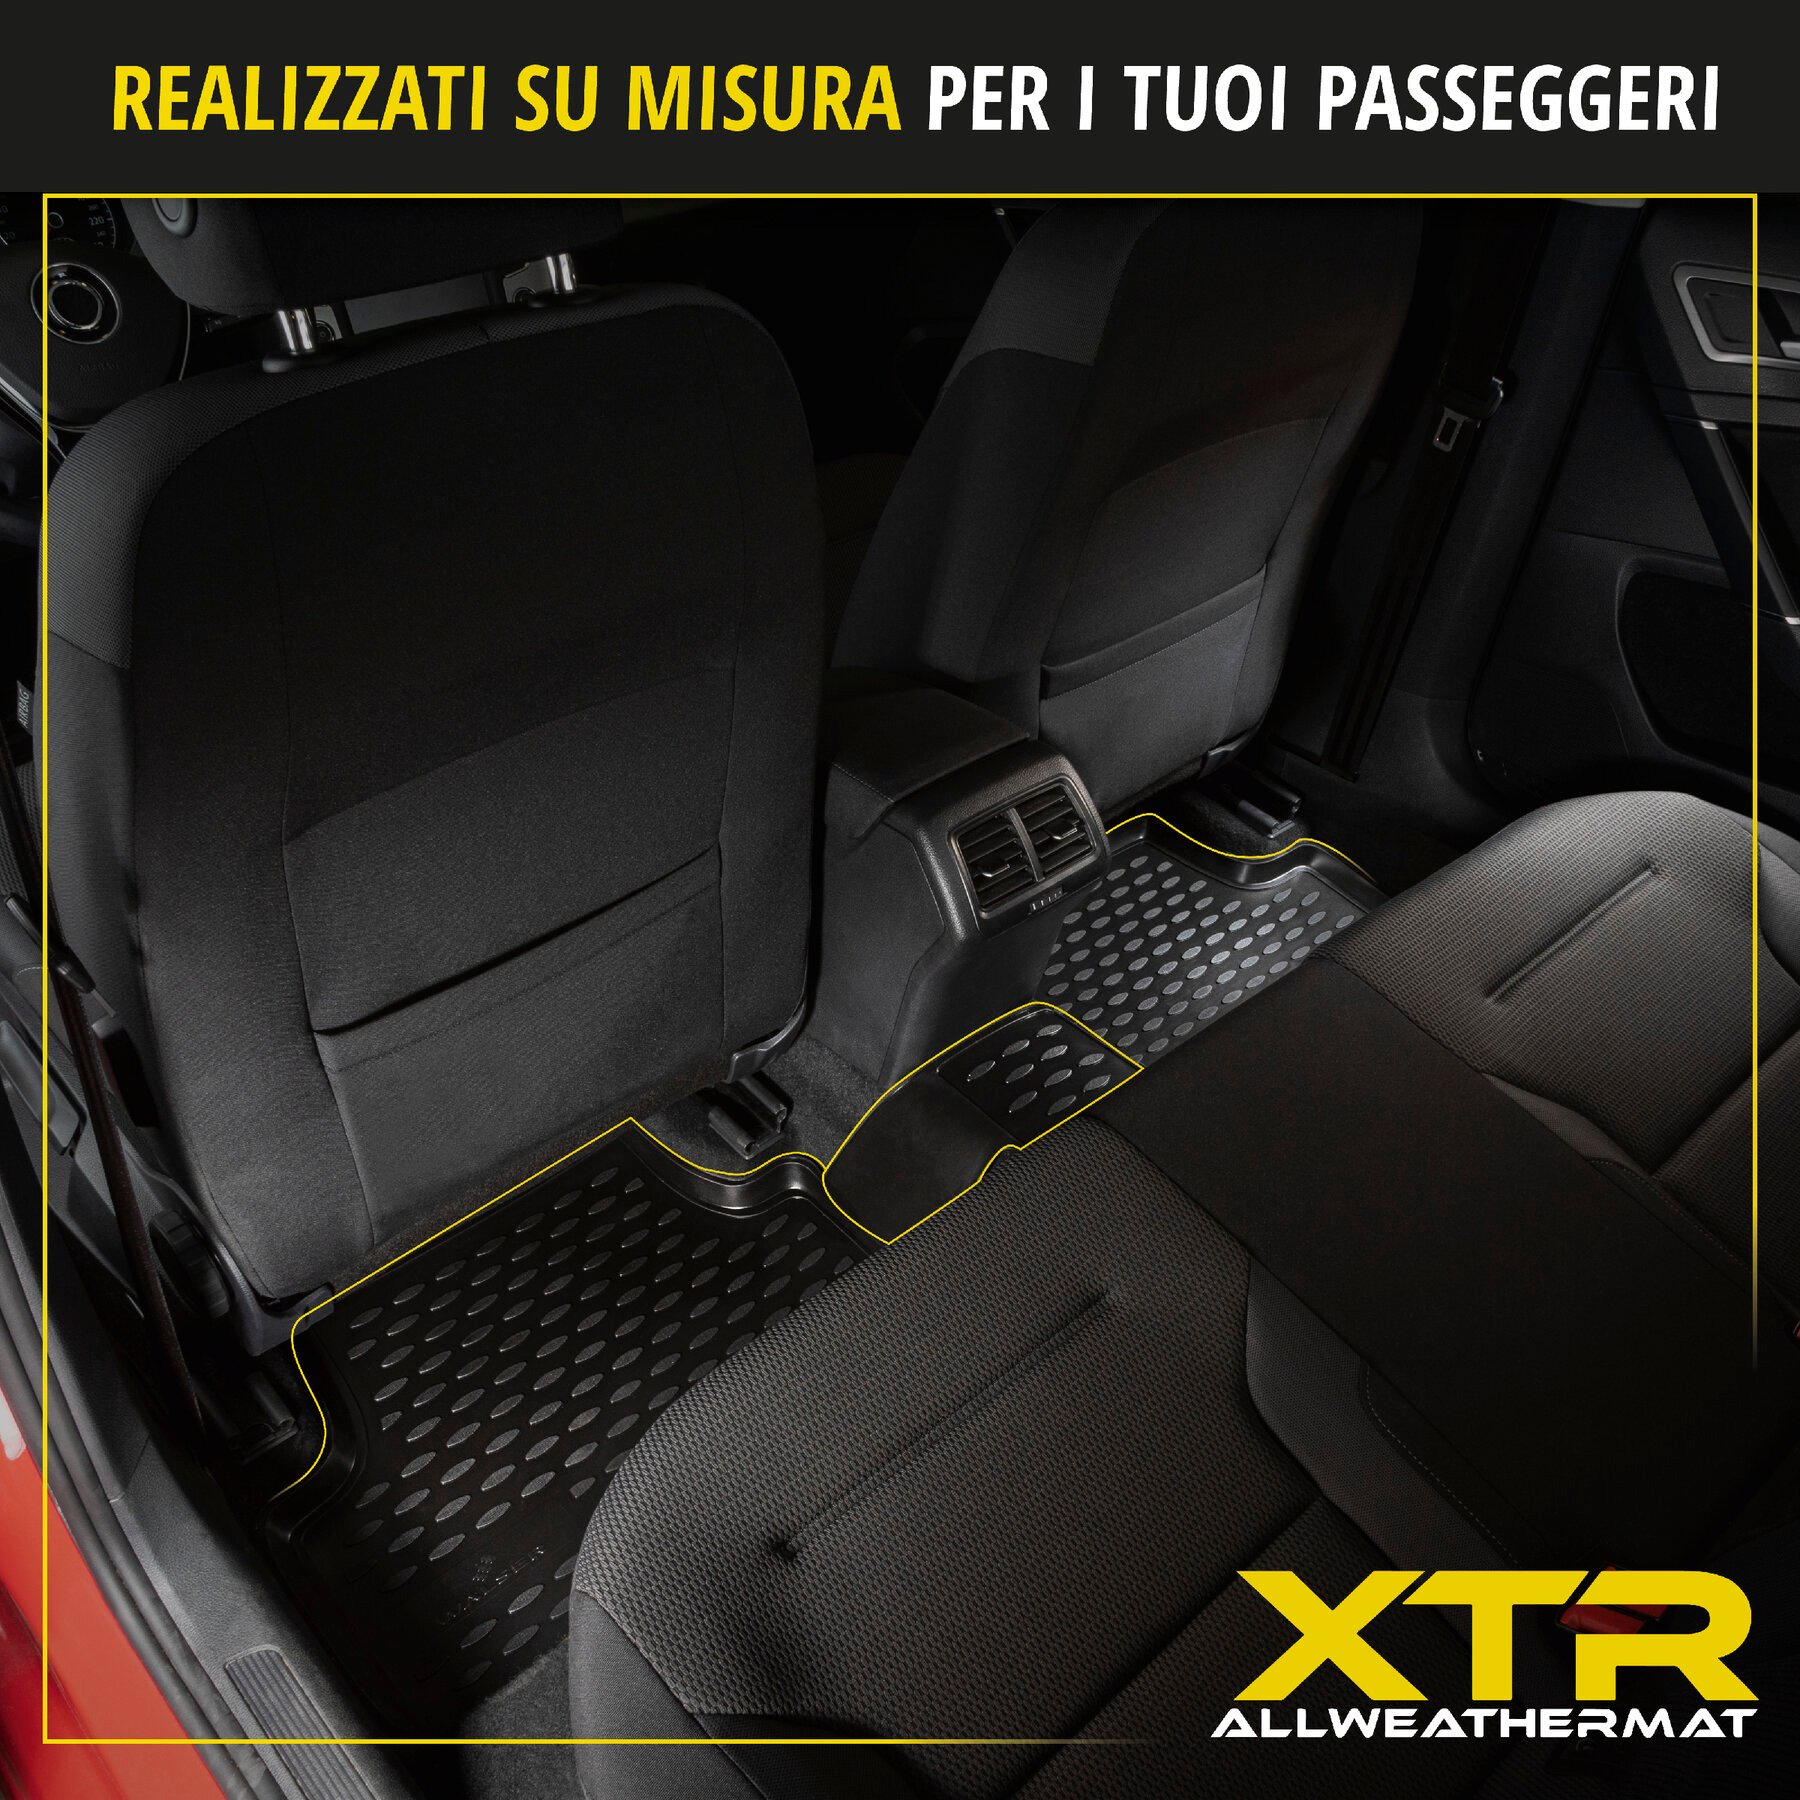 Tappetini in gomma per auto su misura XTR per Renault Clio III 01/2005-12/2014, Clio III Grandtour 2007- 2012